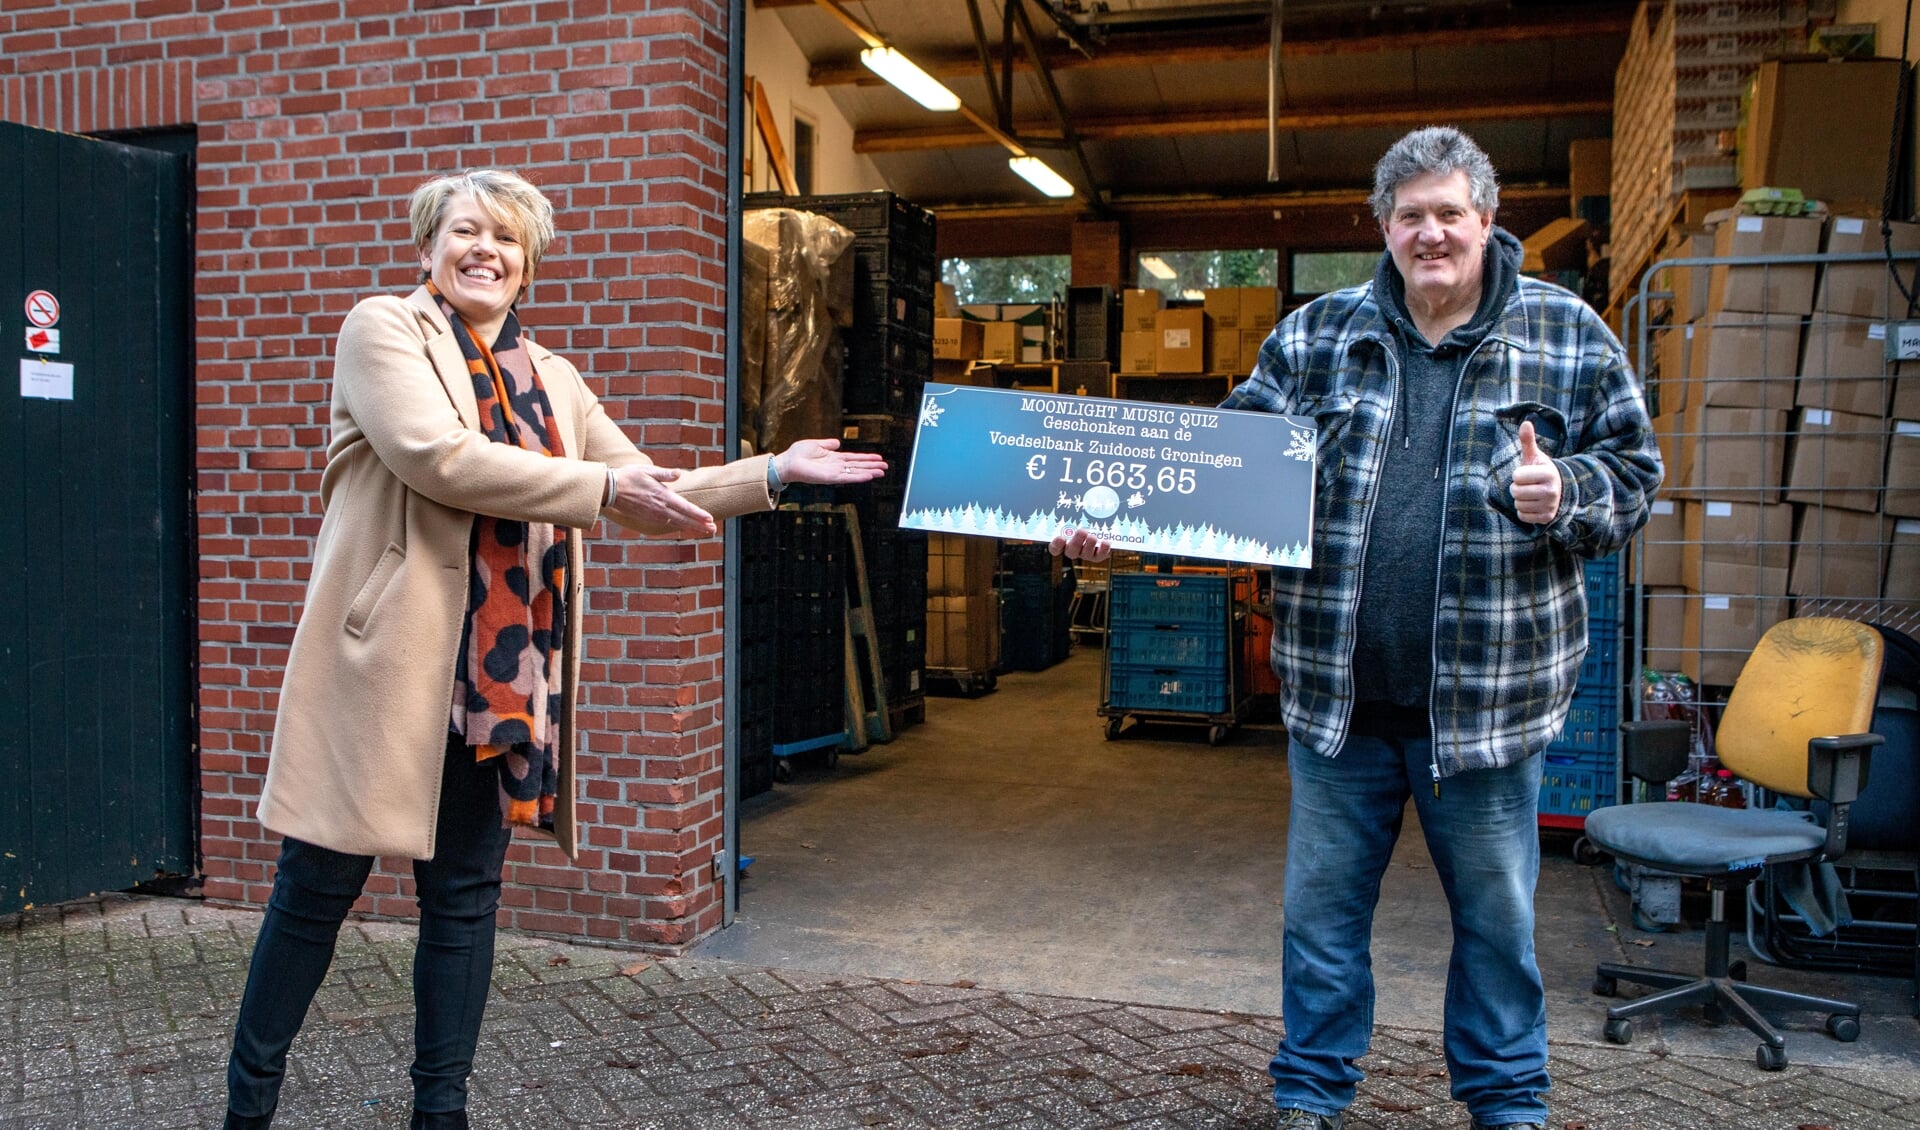 Jessica Looden overhandigt de cheque aan Willem van Veen van de Voedselbank Zuidoost Groningen.